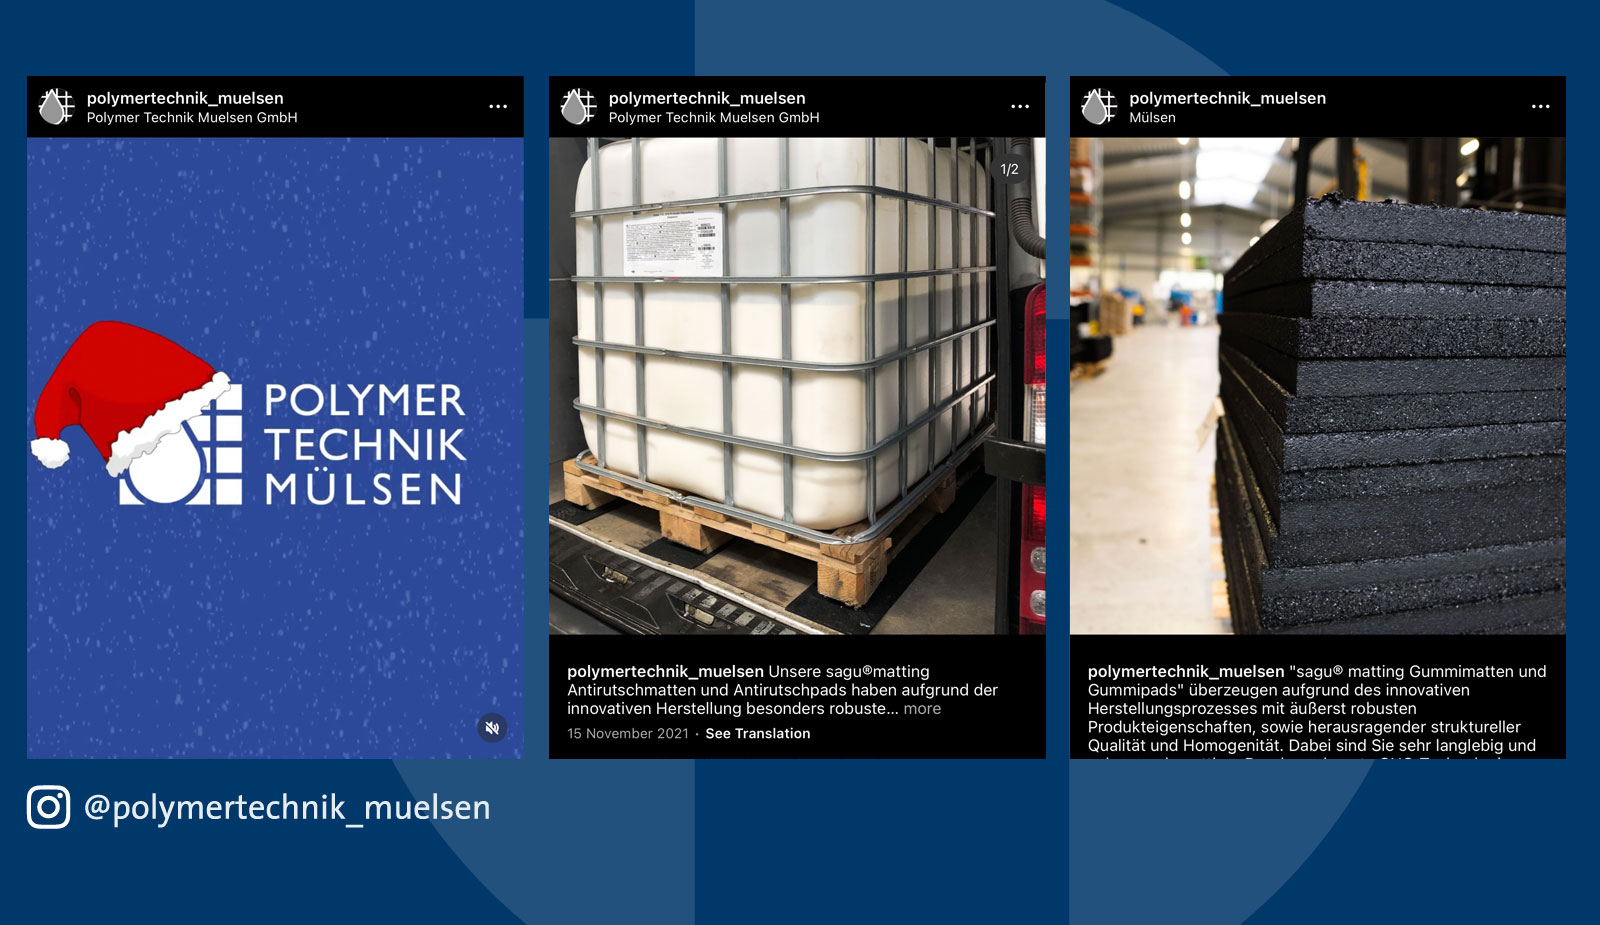 Instagrambetreuung Polymer Technik Mülsen von transparent Werbeagentur Chemnitz